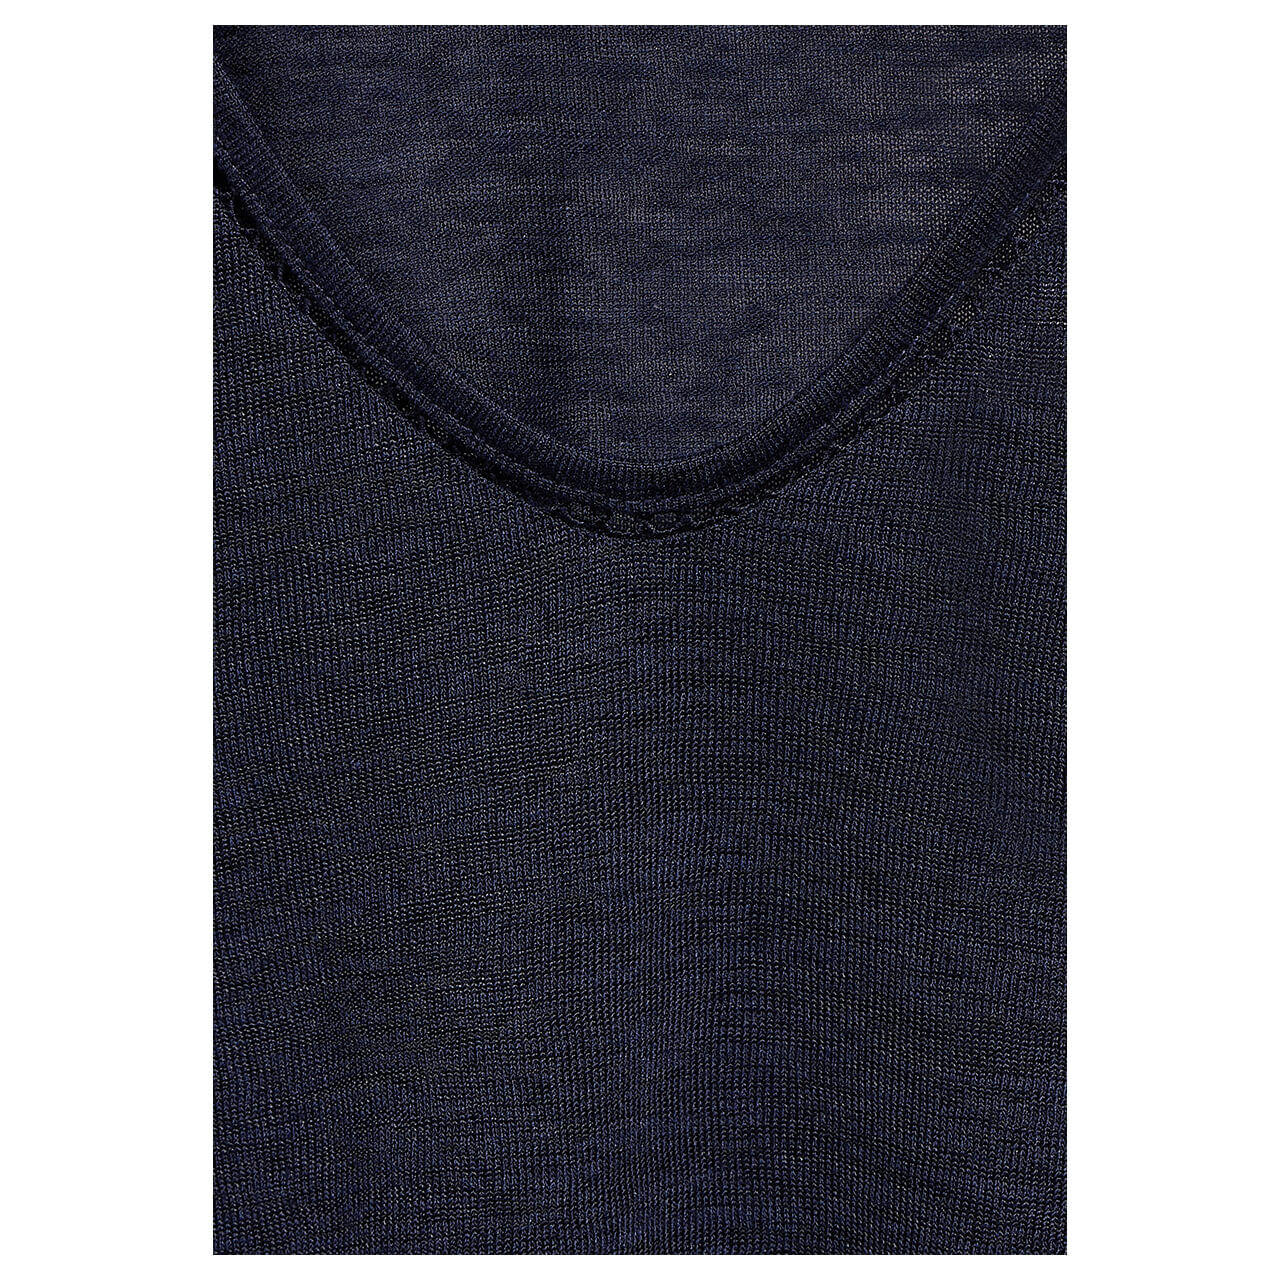 Street One Damen T-Shirt Linen Look deep blue with crochet